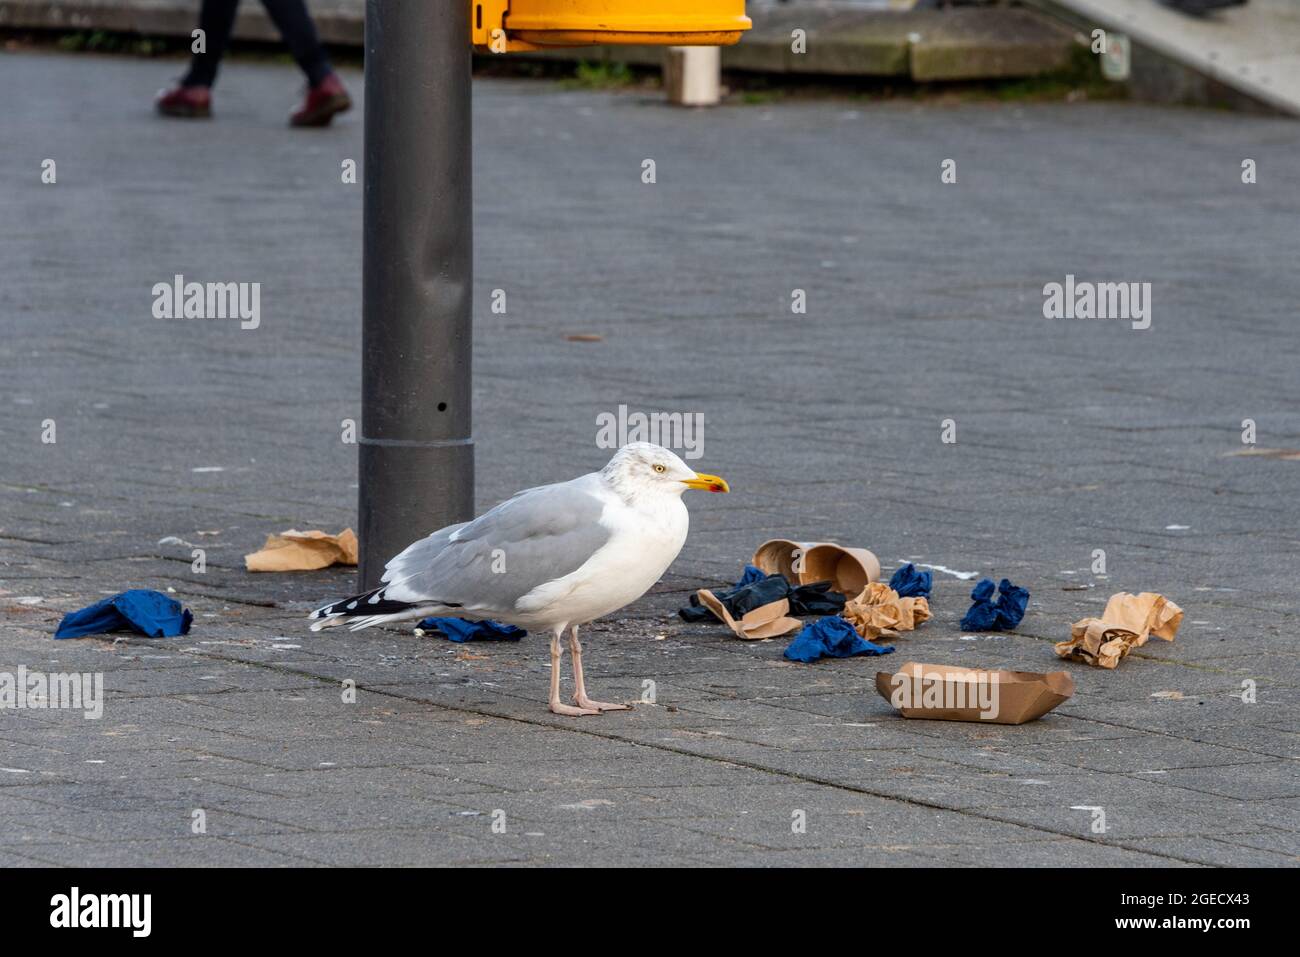 Seemöwe in einer Fußgängerzone duchsucht die Mülltonnen nach Essbarem Stock Photo